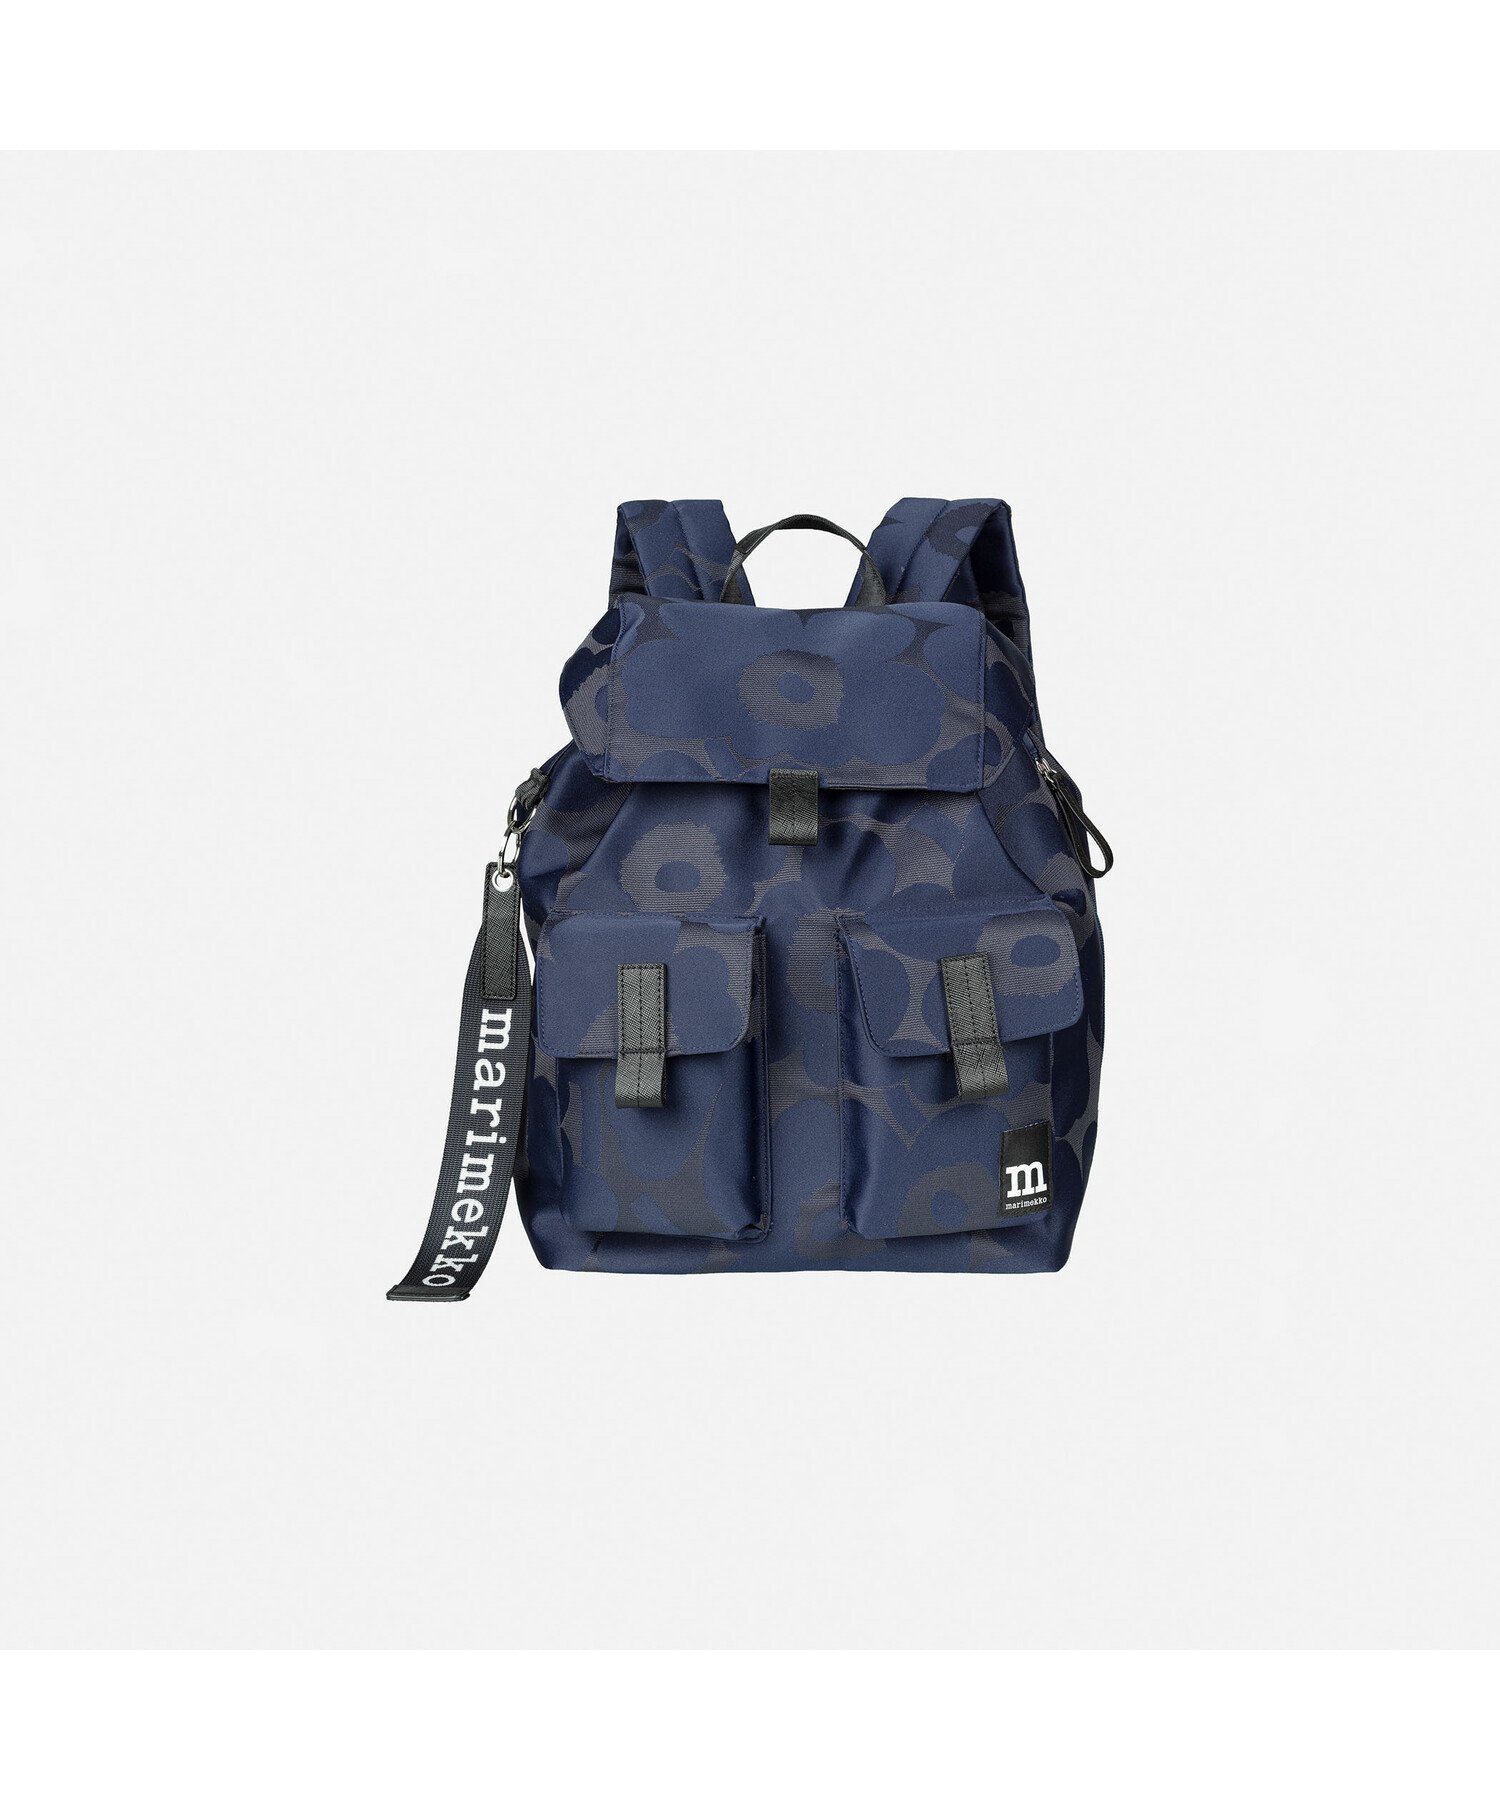 マリメッコ Marimekko Everything Backpack L Unikko バックパック マリメッコ バッグ リュック・バックパック【送料無料】